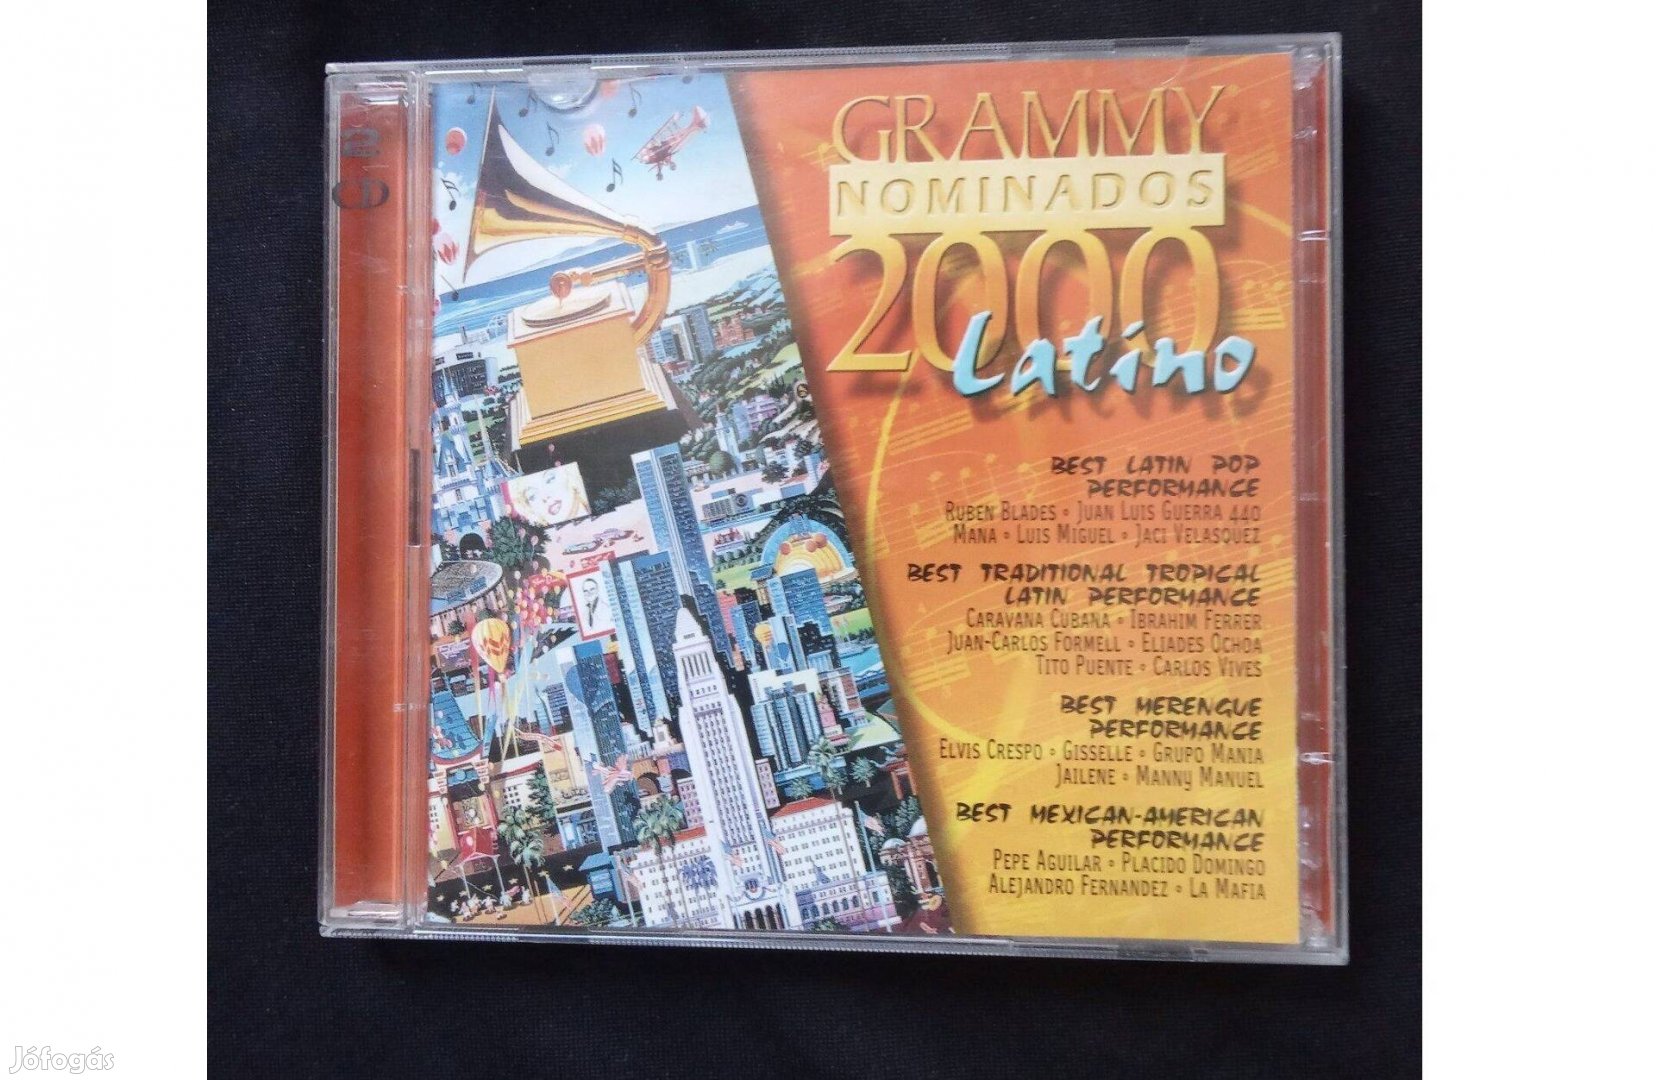 Grammy Nominados 2000 Latino dupla cd